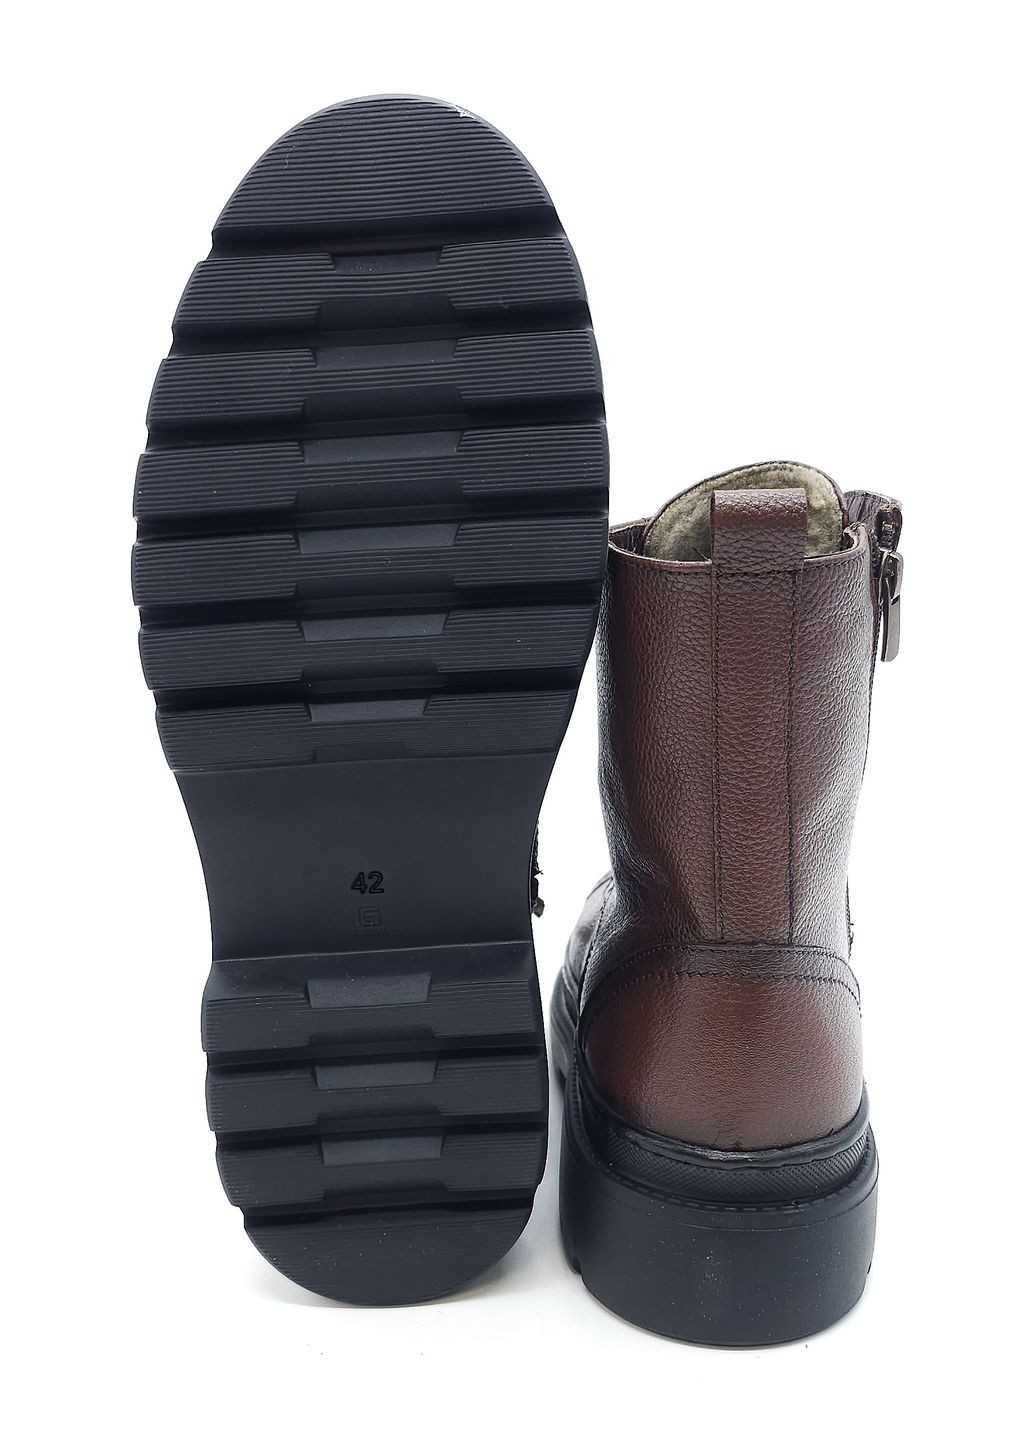 Коричневые осенние мужские ботинки зимние коричневые кожаные at-18-19 27,5 см (р) ALTURA